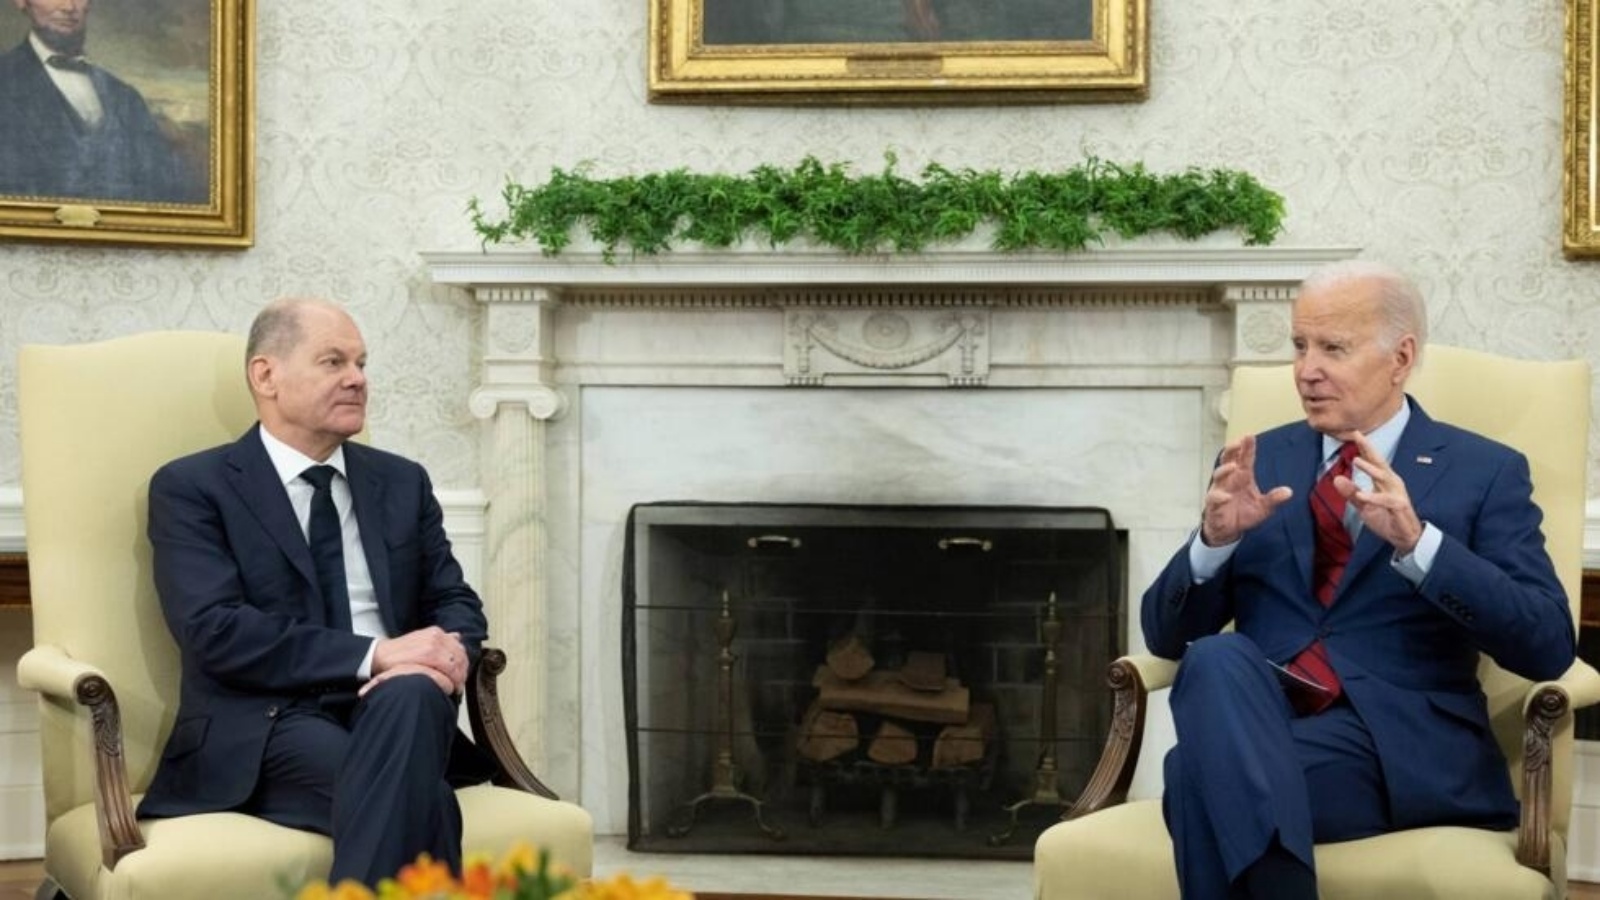 الرئيس الأميركي جو بايدن مع المستشار الألماني أولاف شولتس في البيت الأبيض بتاريخ 3 آذار/مارس 2023 الرئيس الأميركي جو بايدن مع المستشار الألماني أولاف شولتس في البيت الأبيض بتاريخ 3 آذار (مارس) 2023 